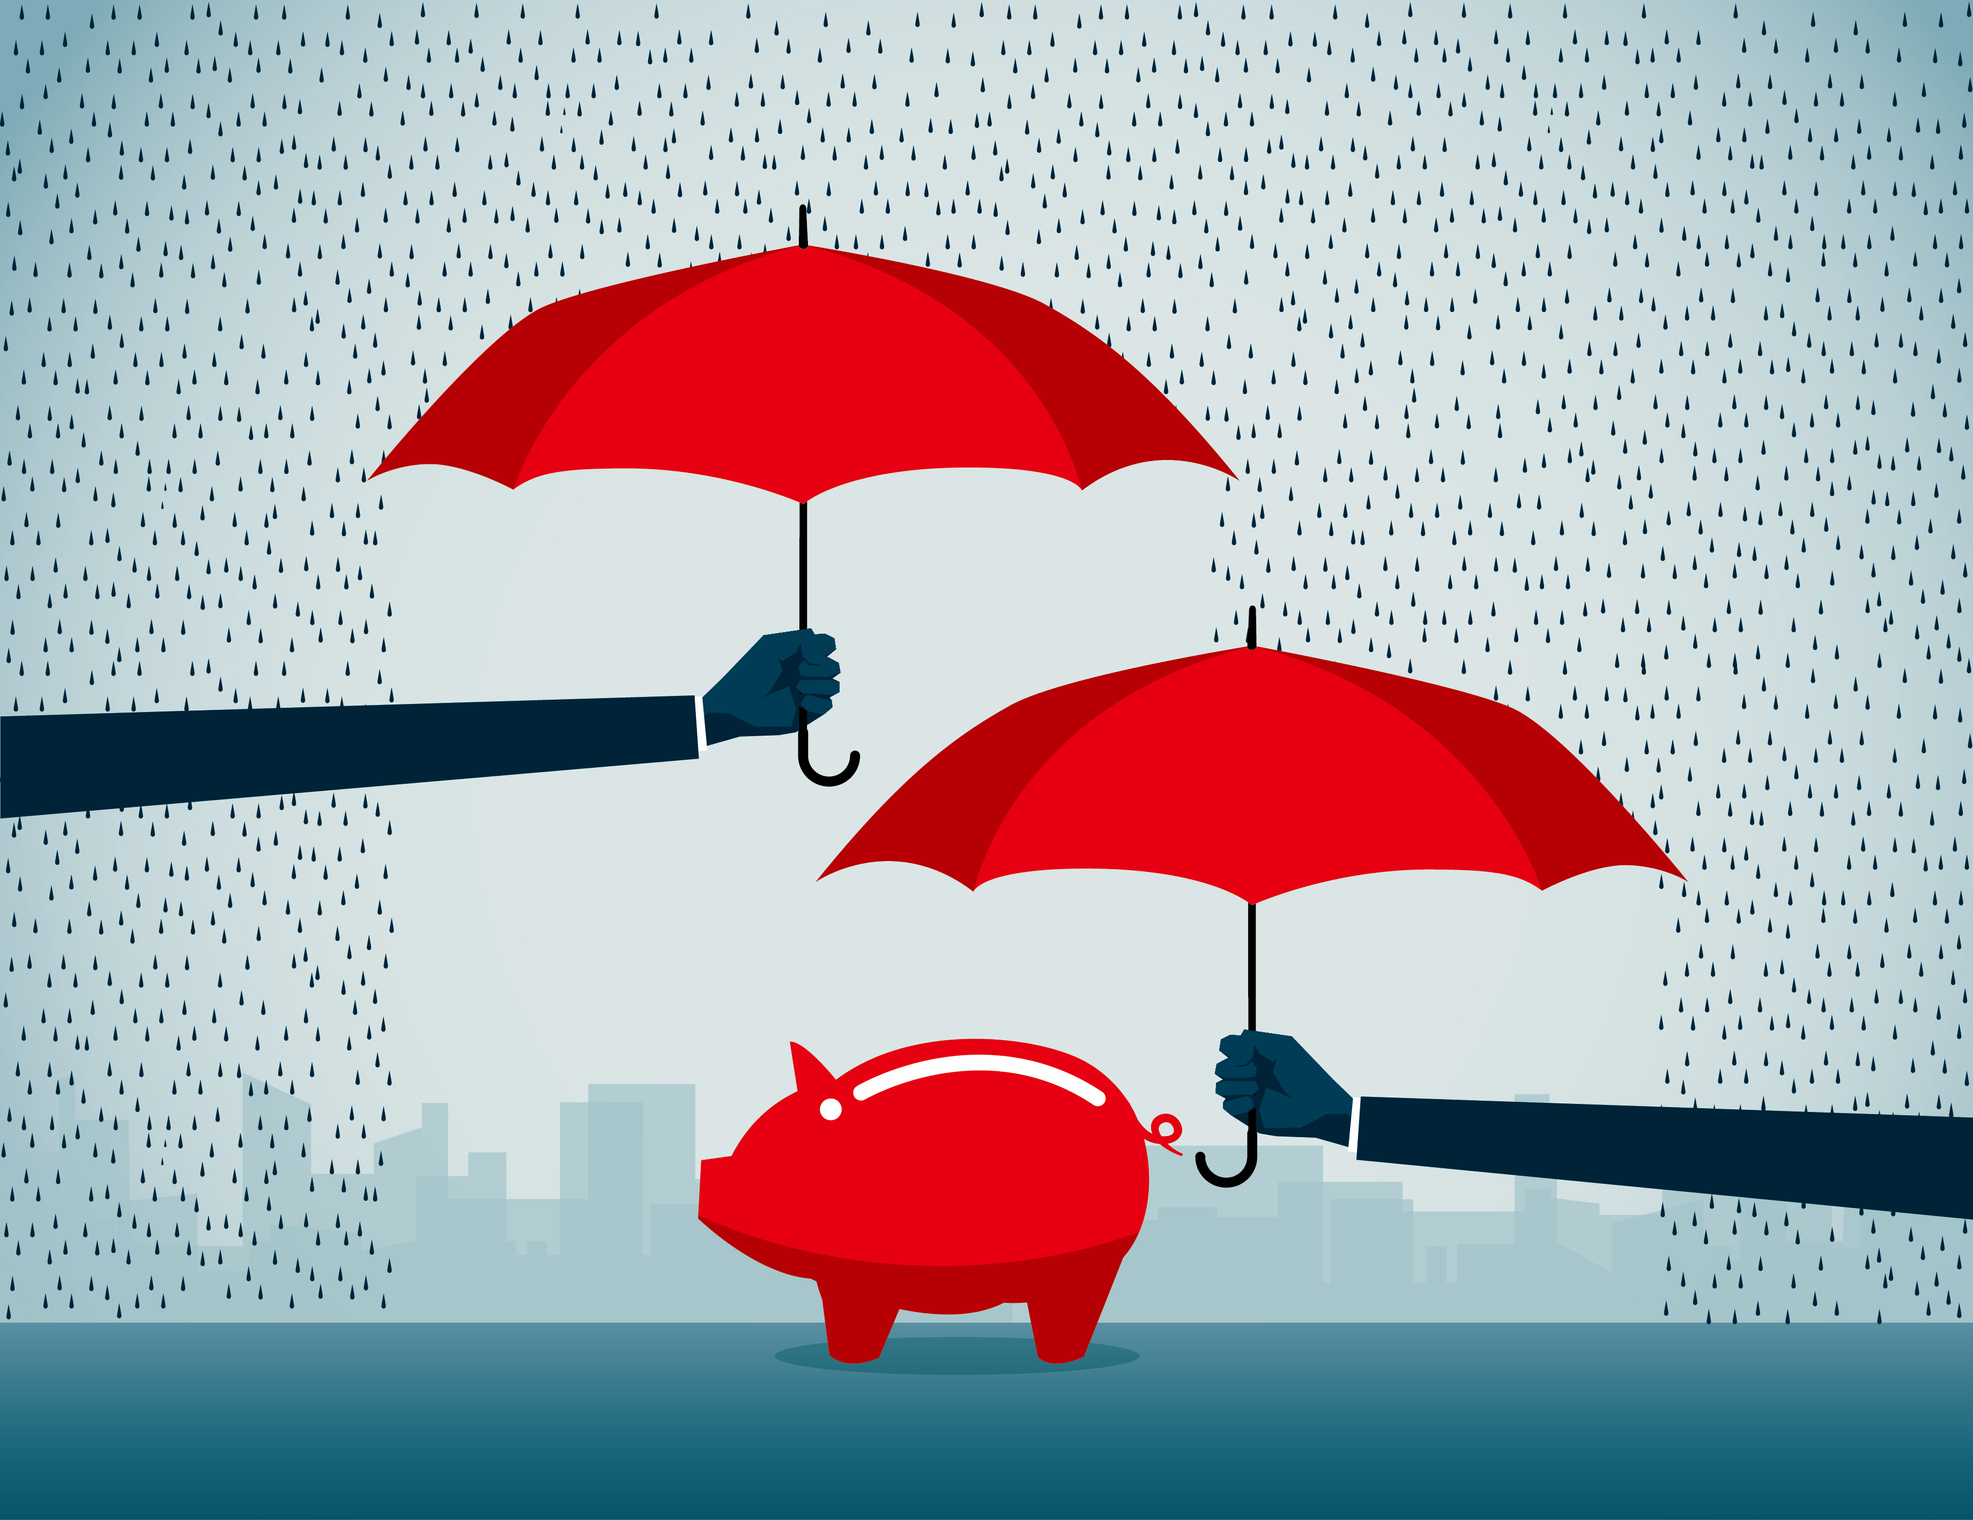 Bild eines roten Sparschweins im Regen, über dem zwei Personen rote Regenschirme halten